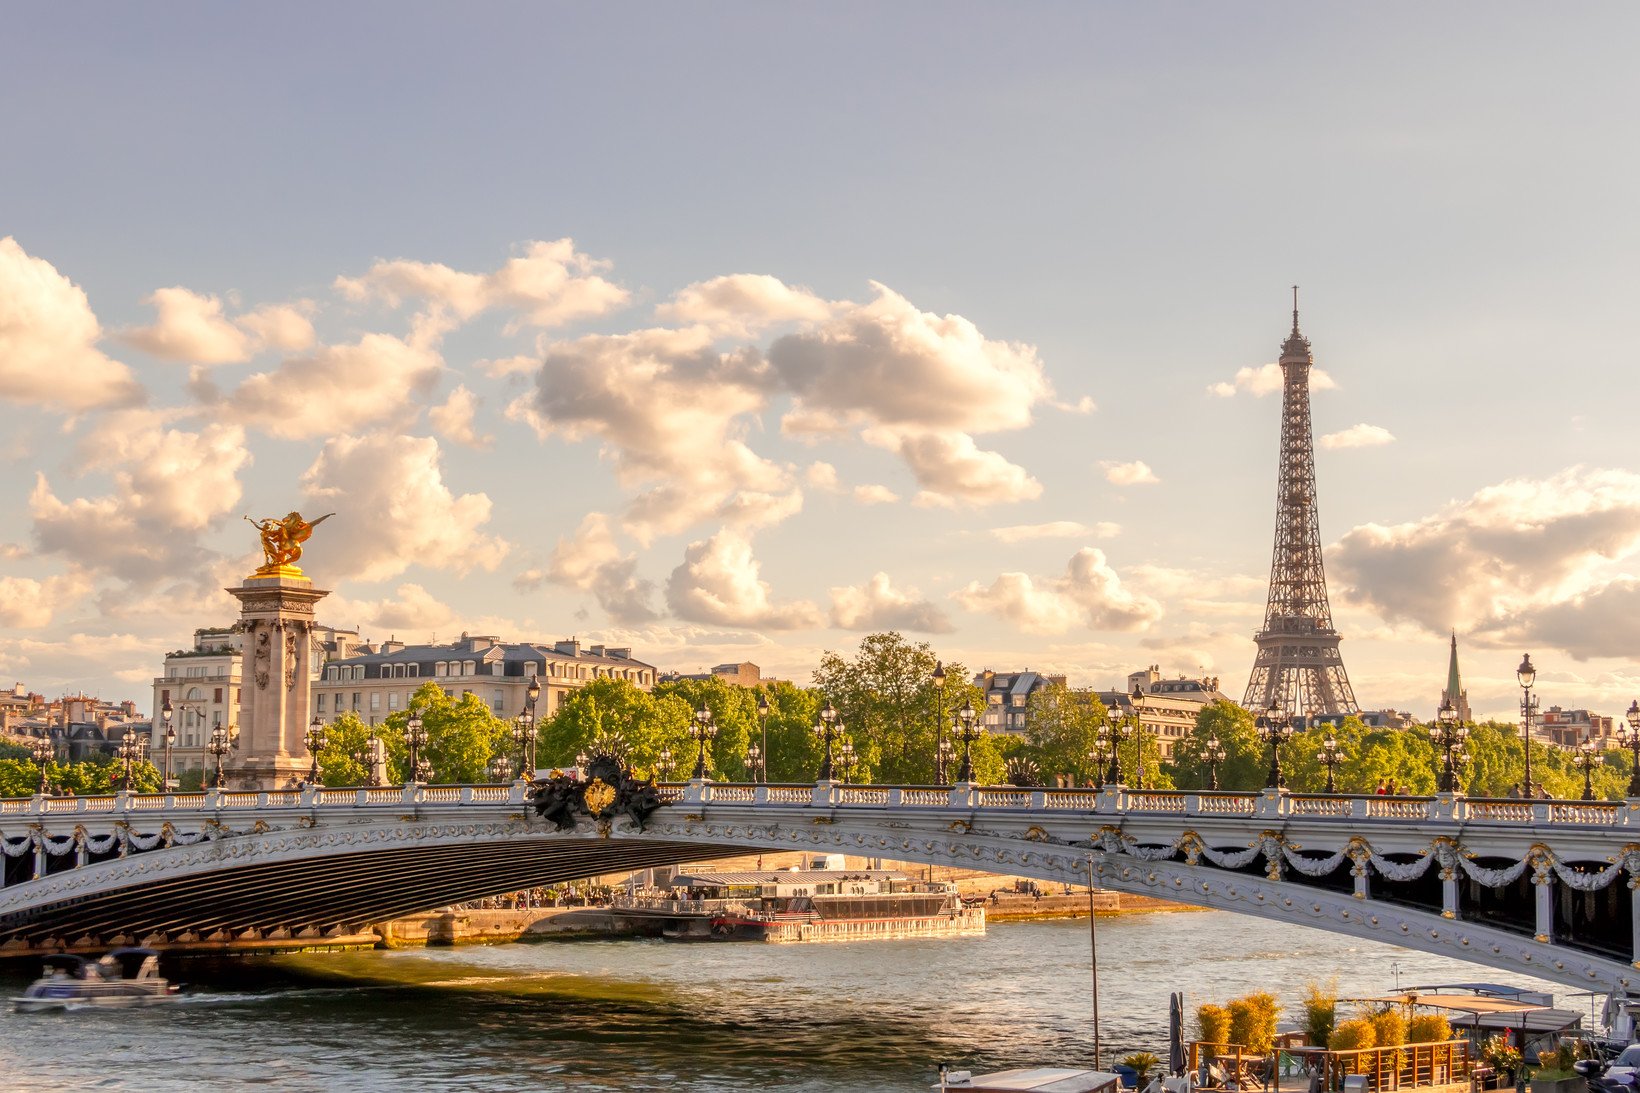 Immobilier de luxe : qui achète encore à Paris et quel type de bien ?